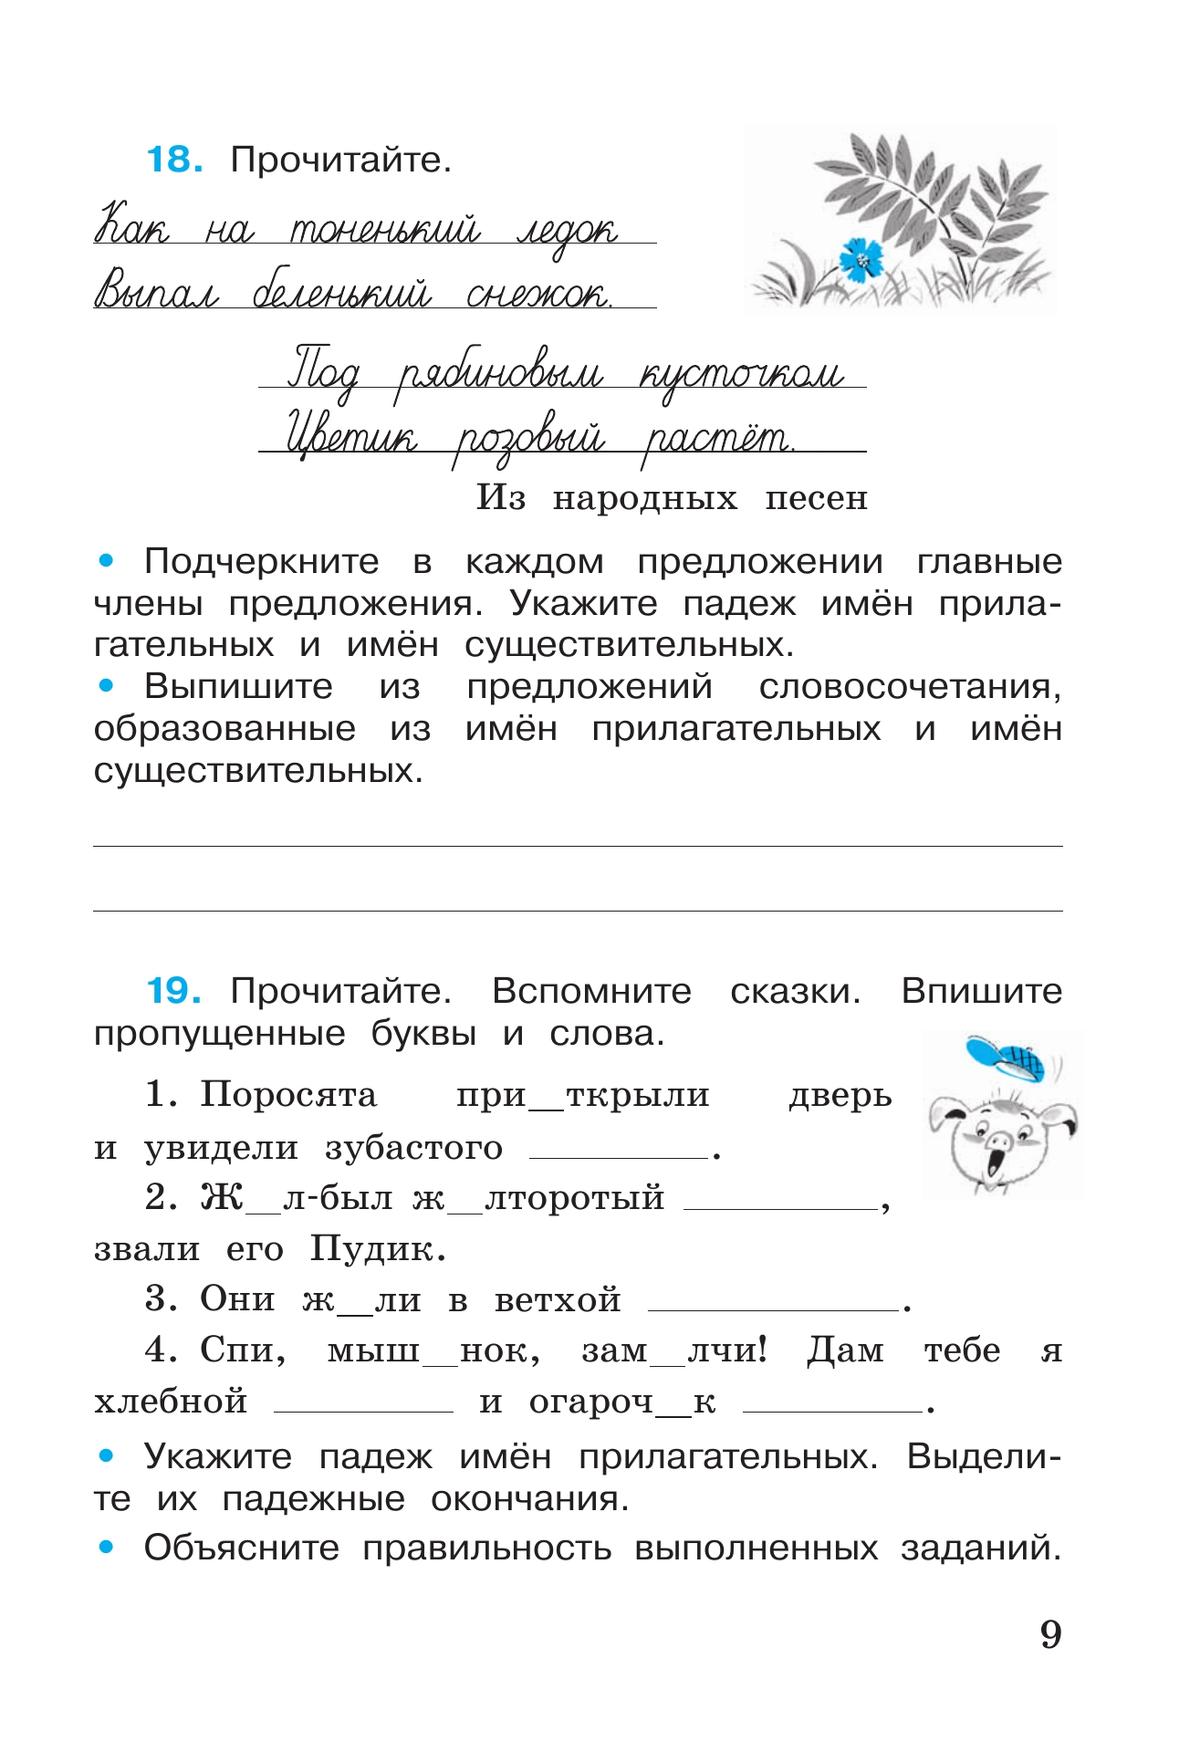 Русский язык. Рабочая тетрадь. 4 класс. В 2-х ч. Ч. 2 11